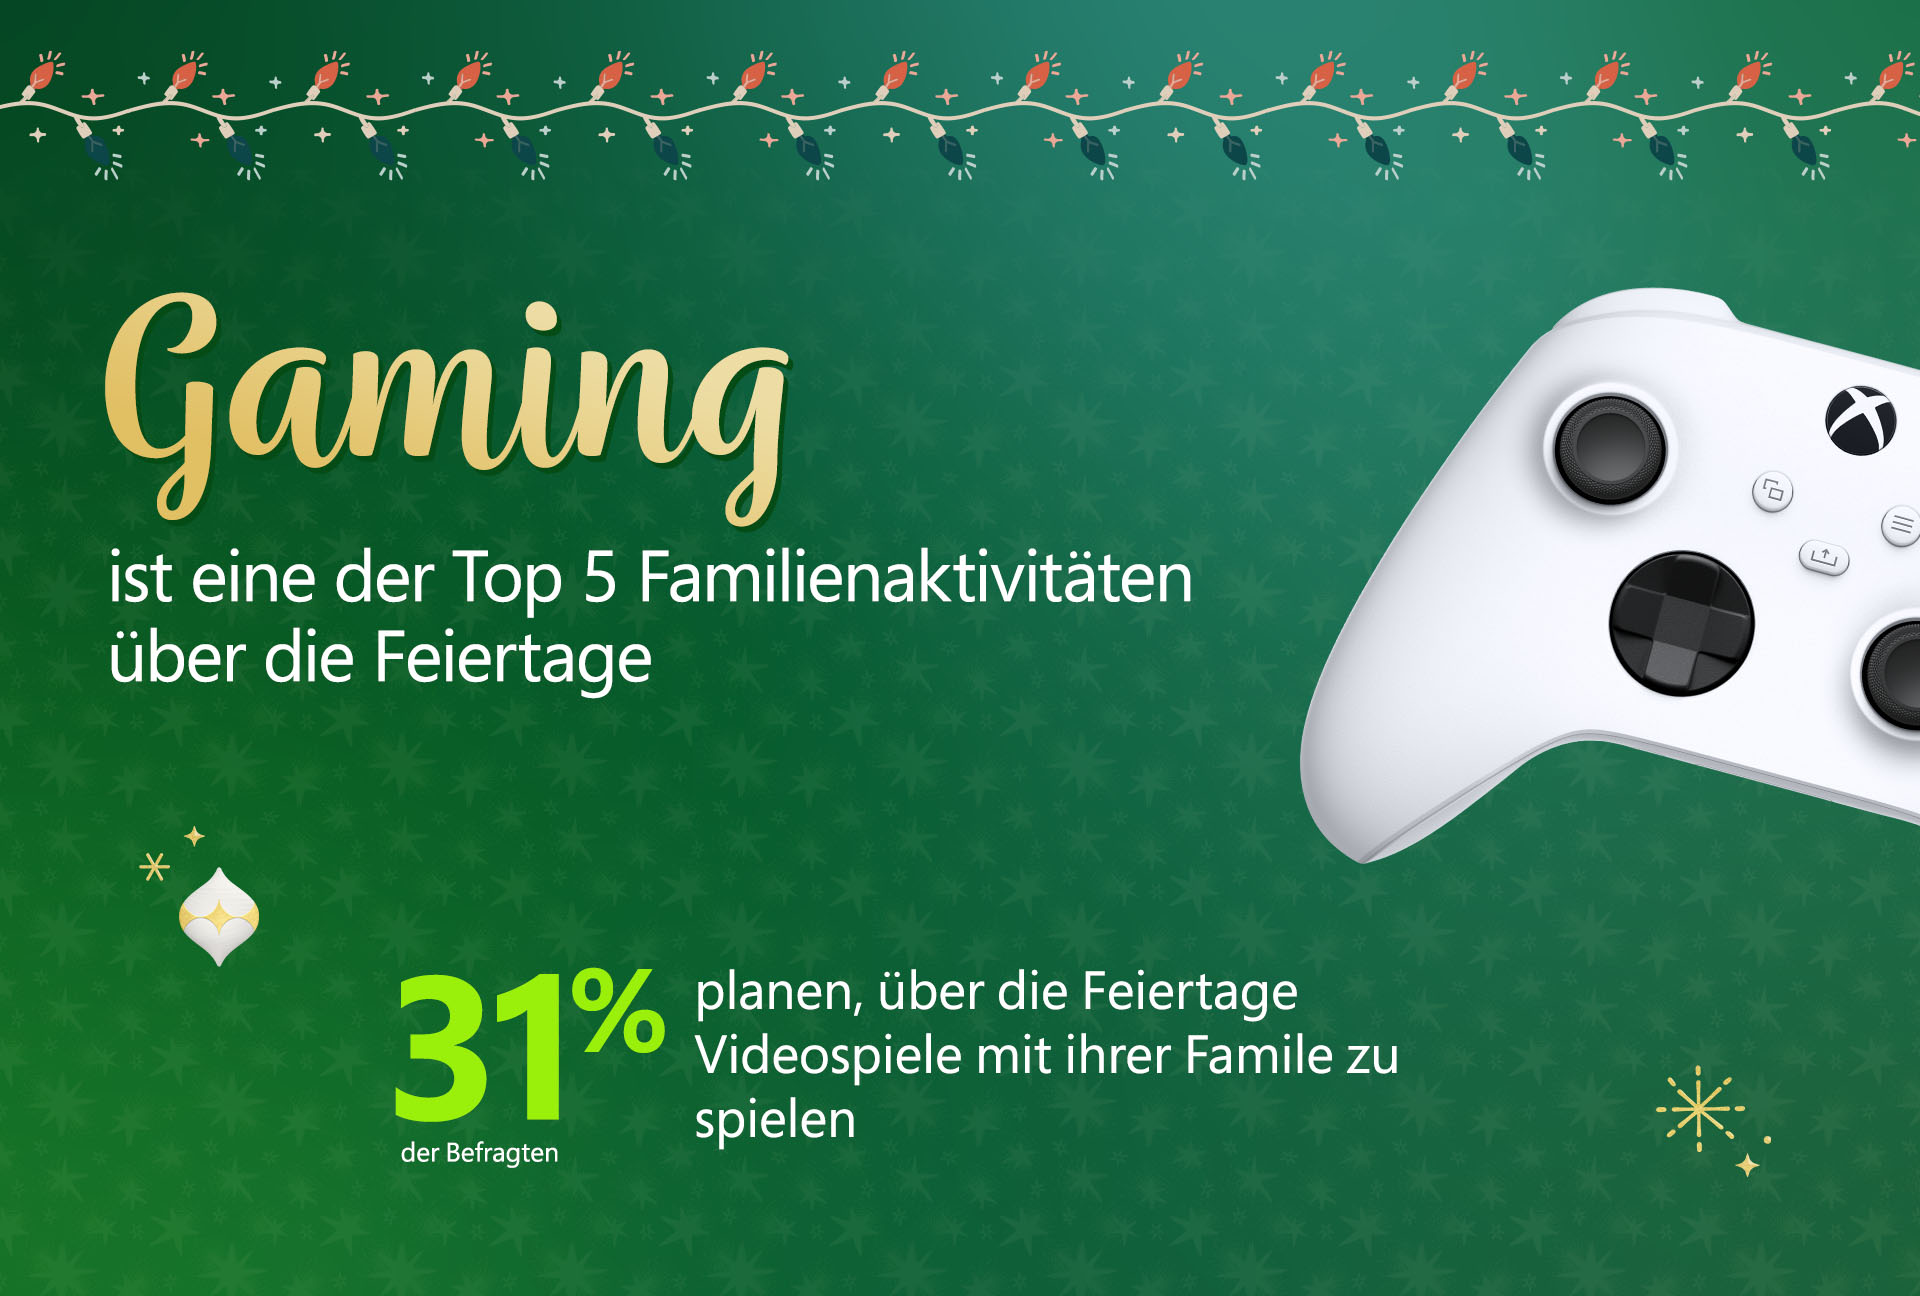 Globale Xbox-Umfrage zeigt: Familien planen, an den Feiertagen gemeinsam zu spielen